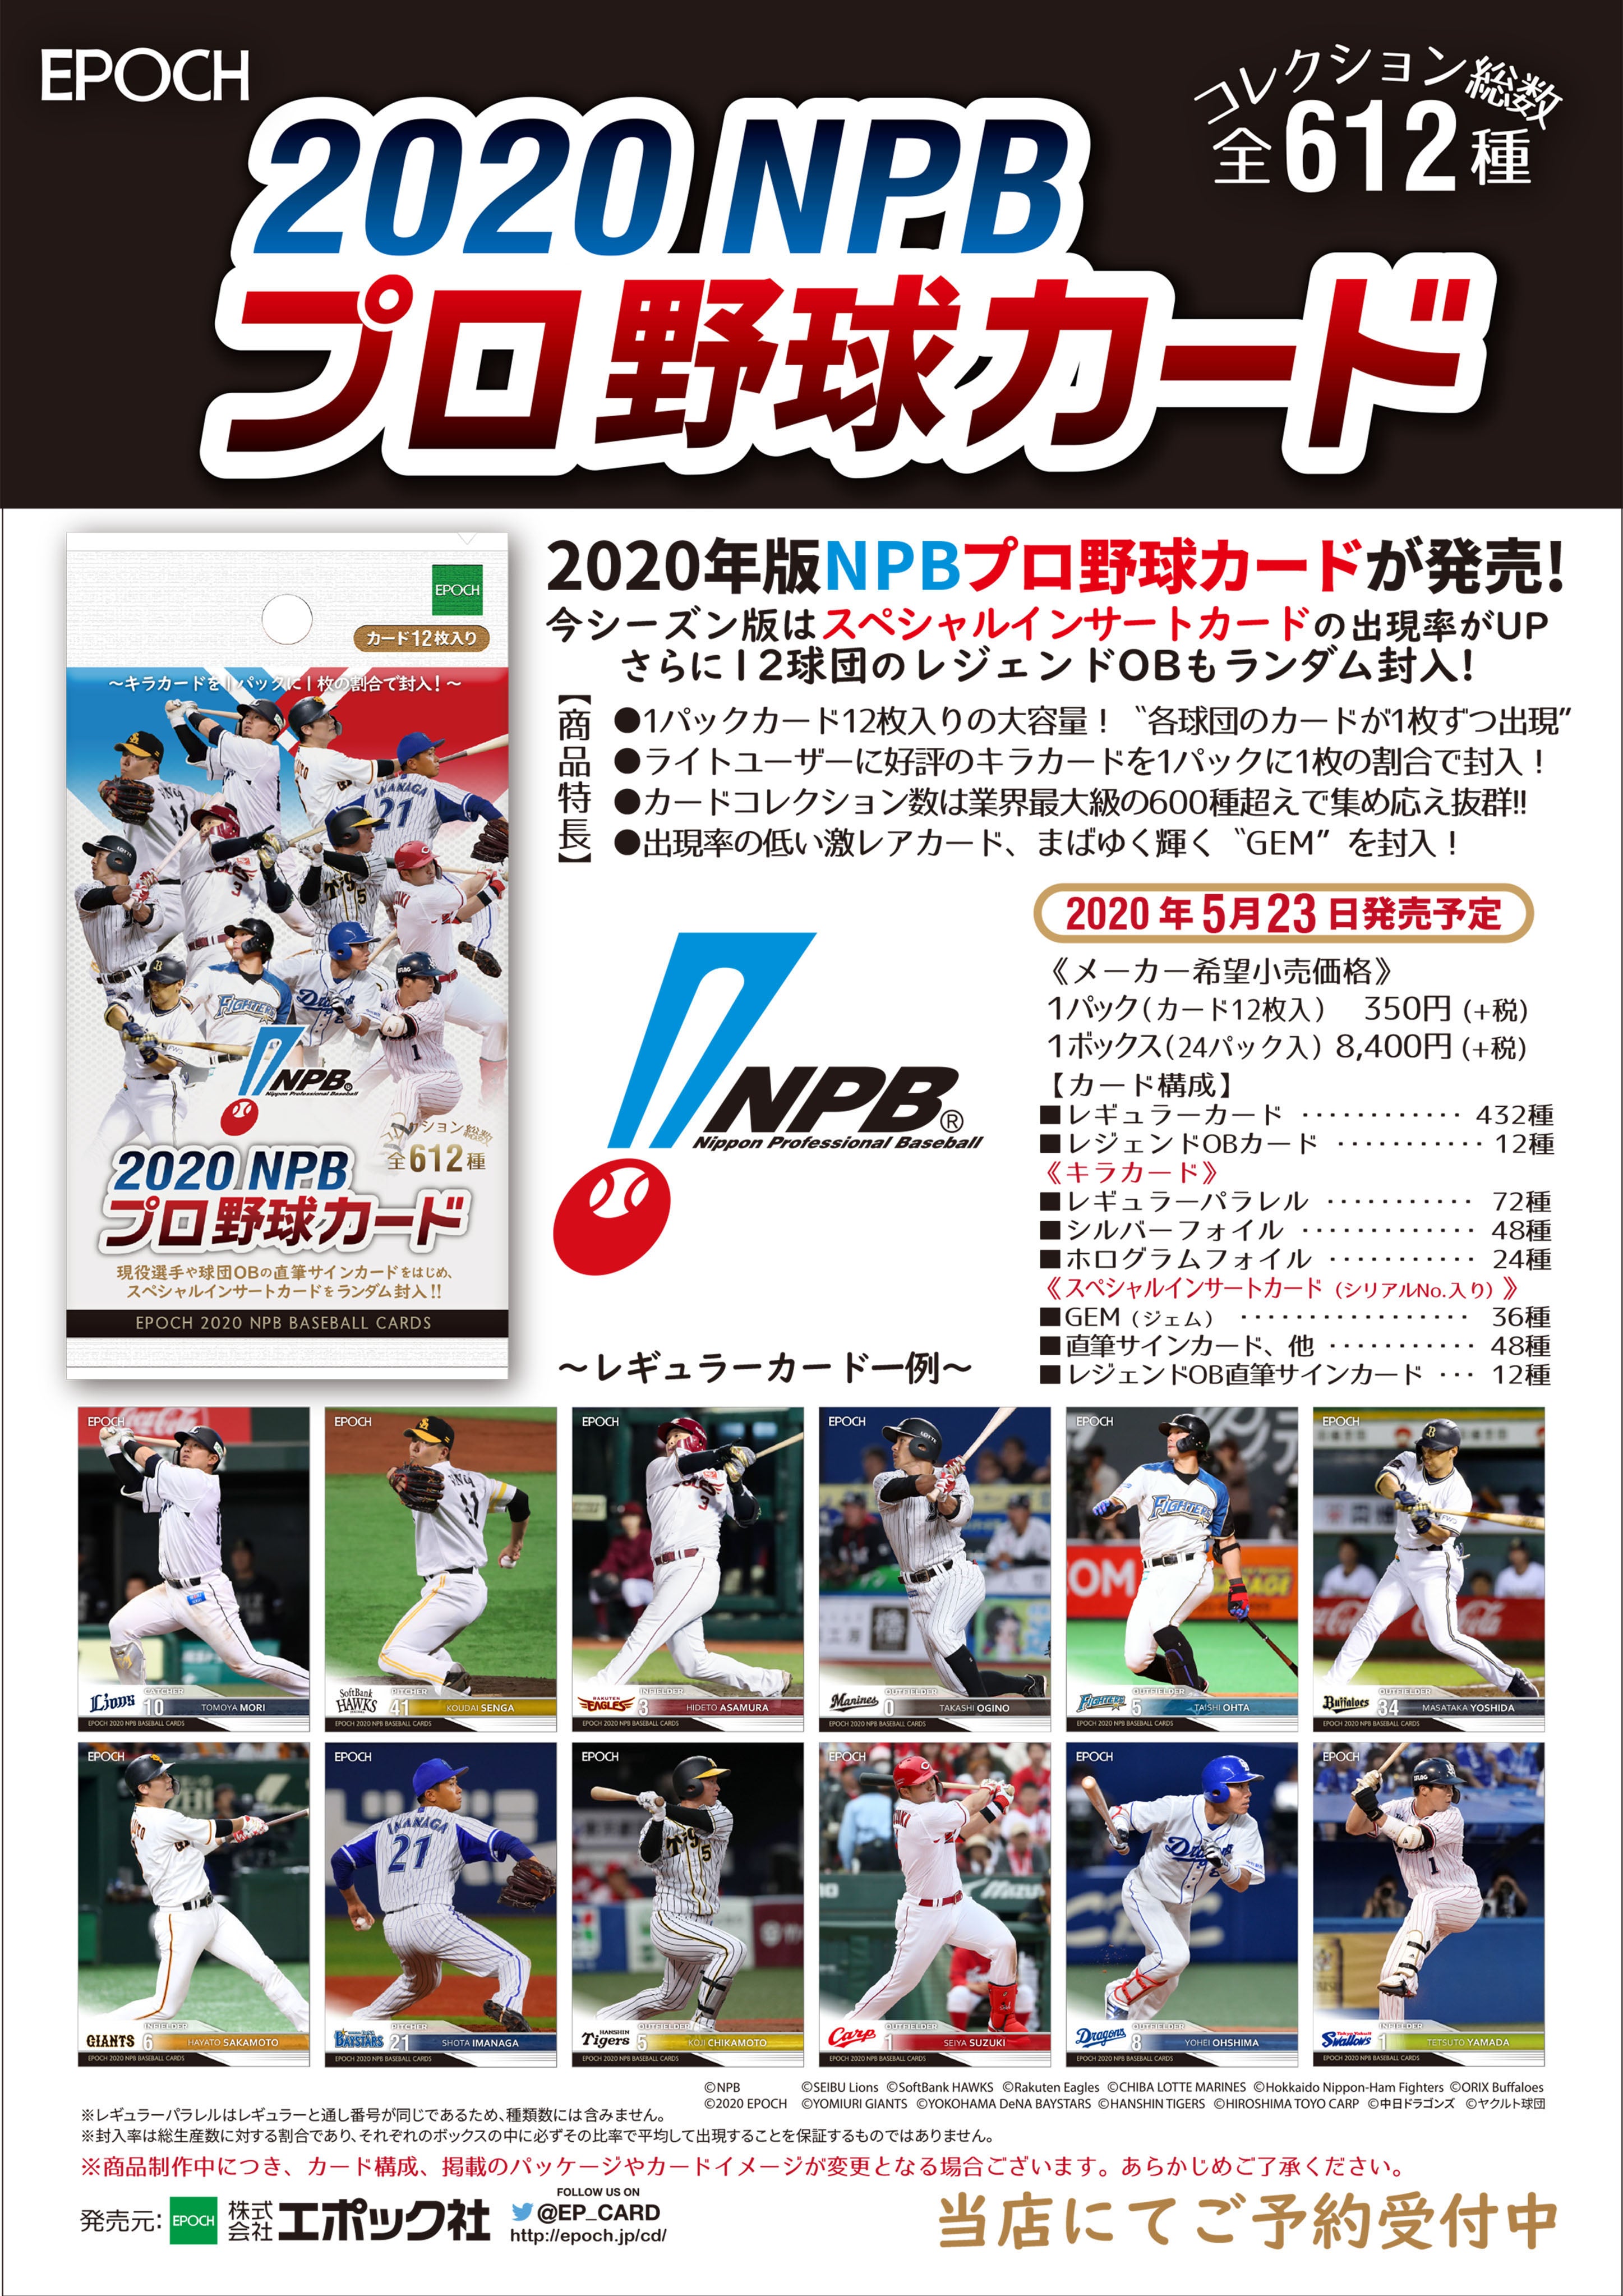 リスト 5月23日 EPOCH 2020 NPB プロ野球カード | スポーツカード